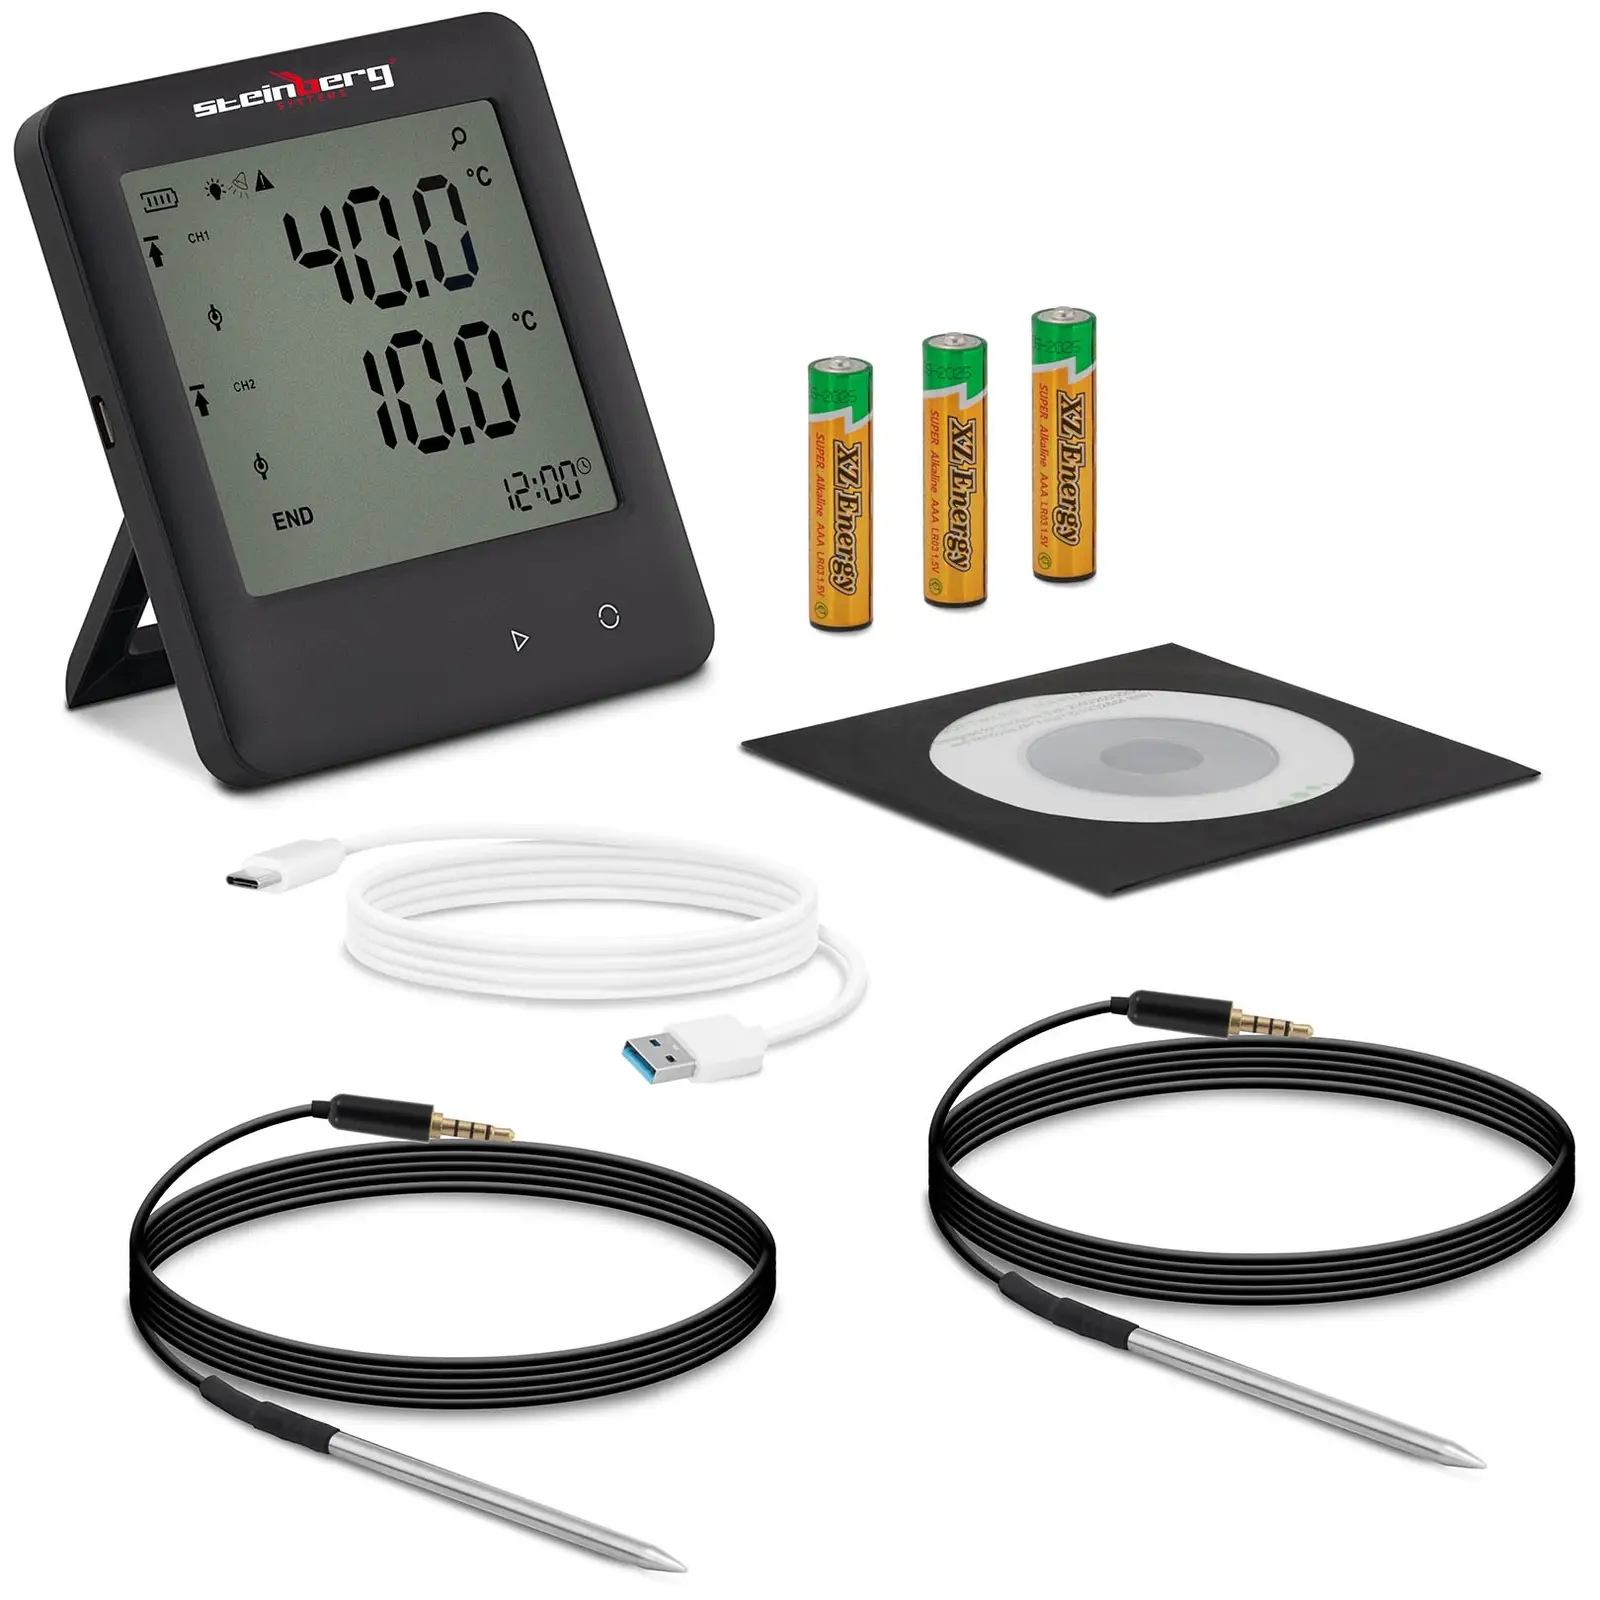 Καταγραφέας δεδομένων θερμοκρασίας - LCD - -200 έως +250 °C - 2 εξωτερικοί αισθητήρες